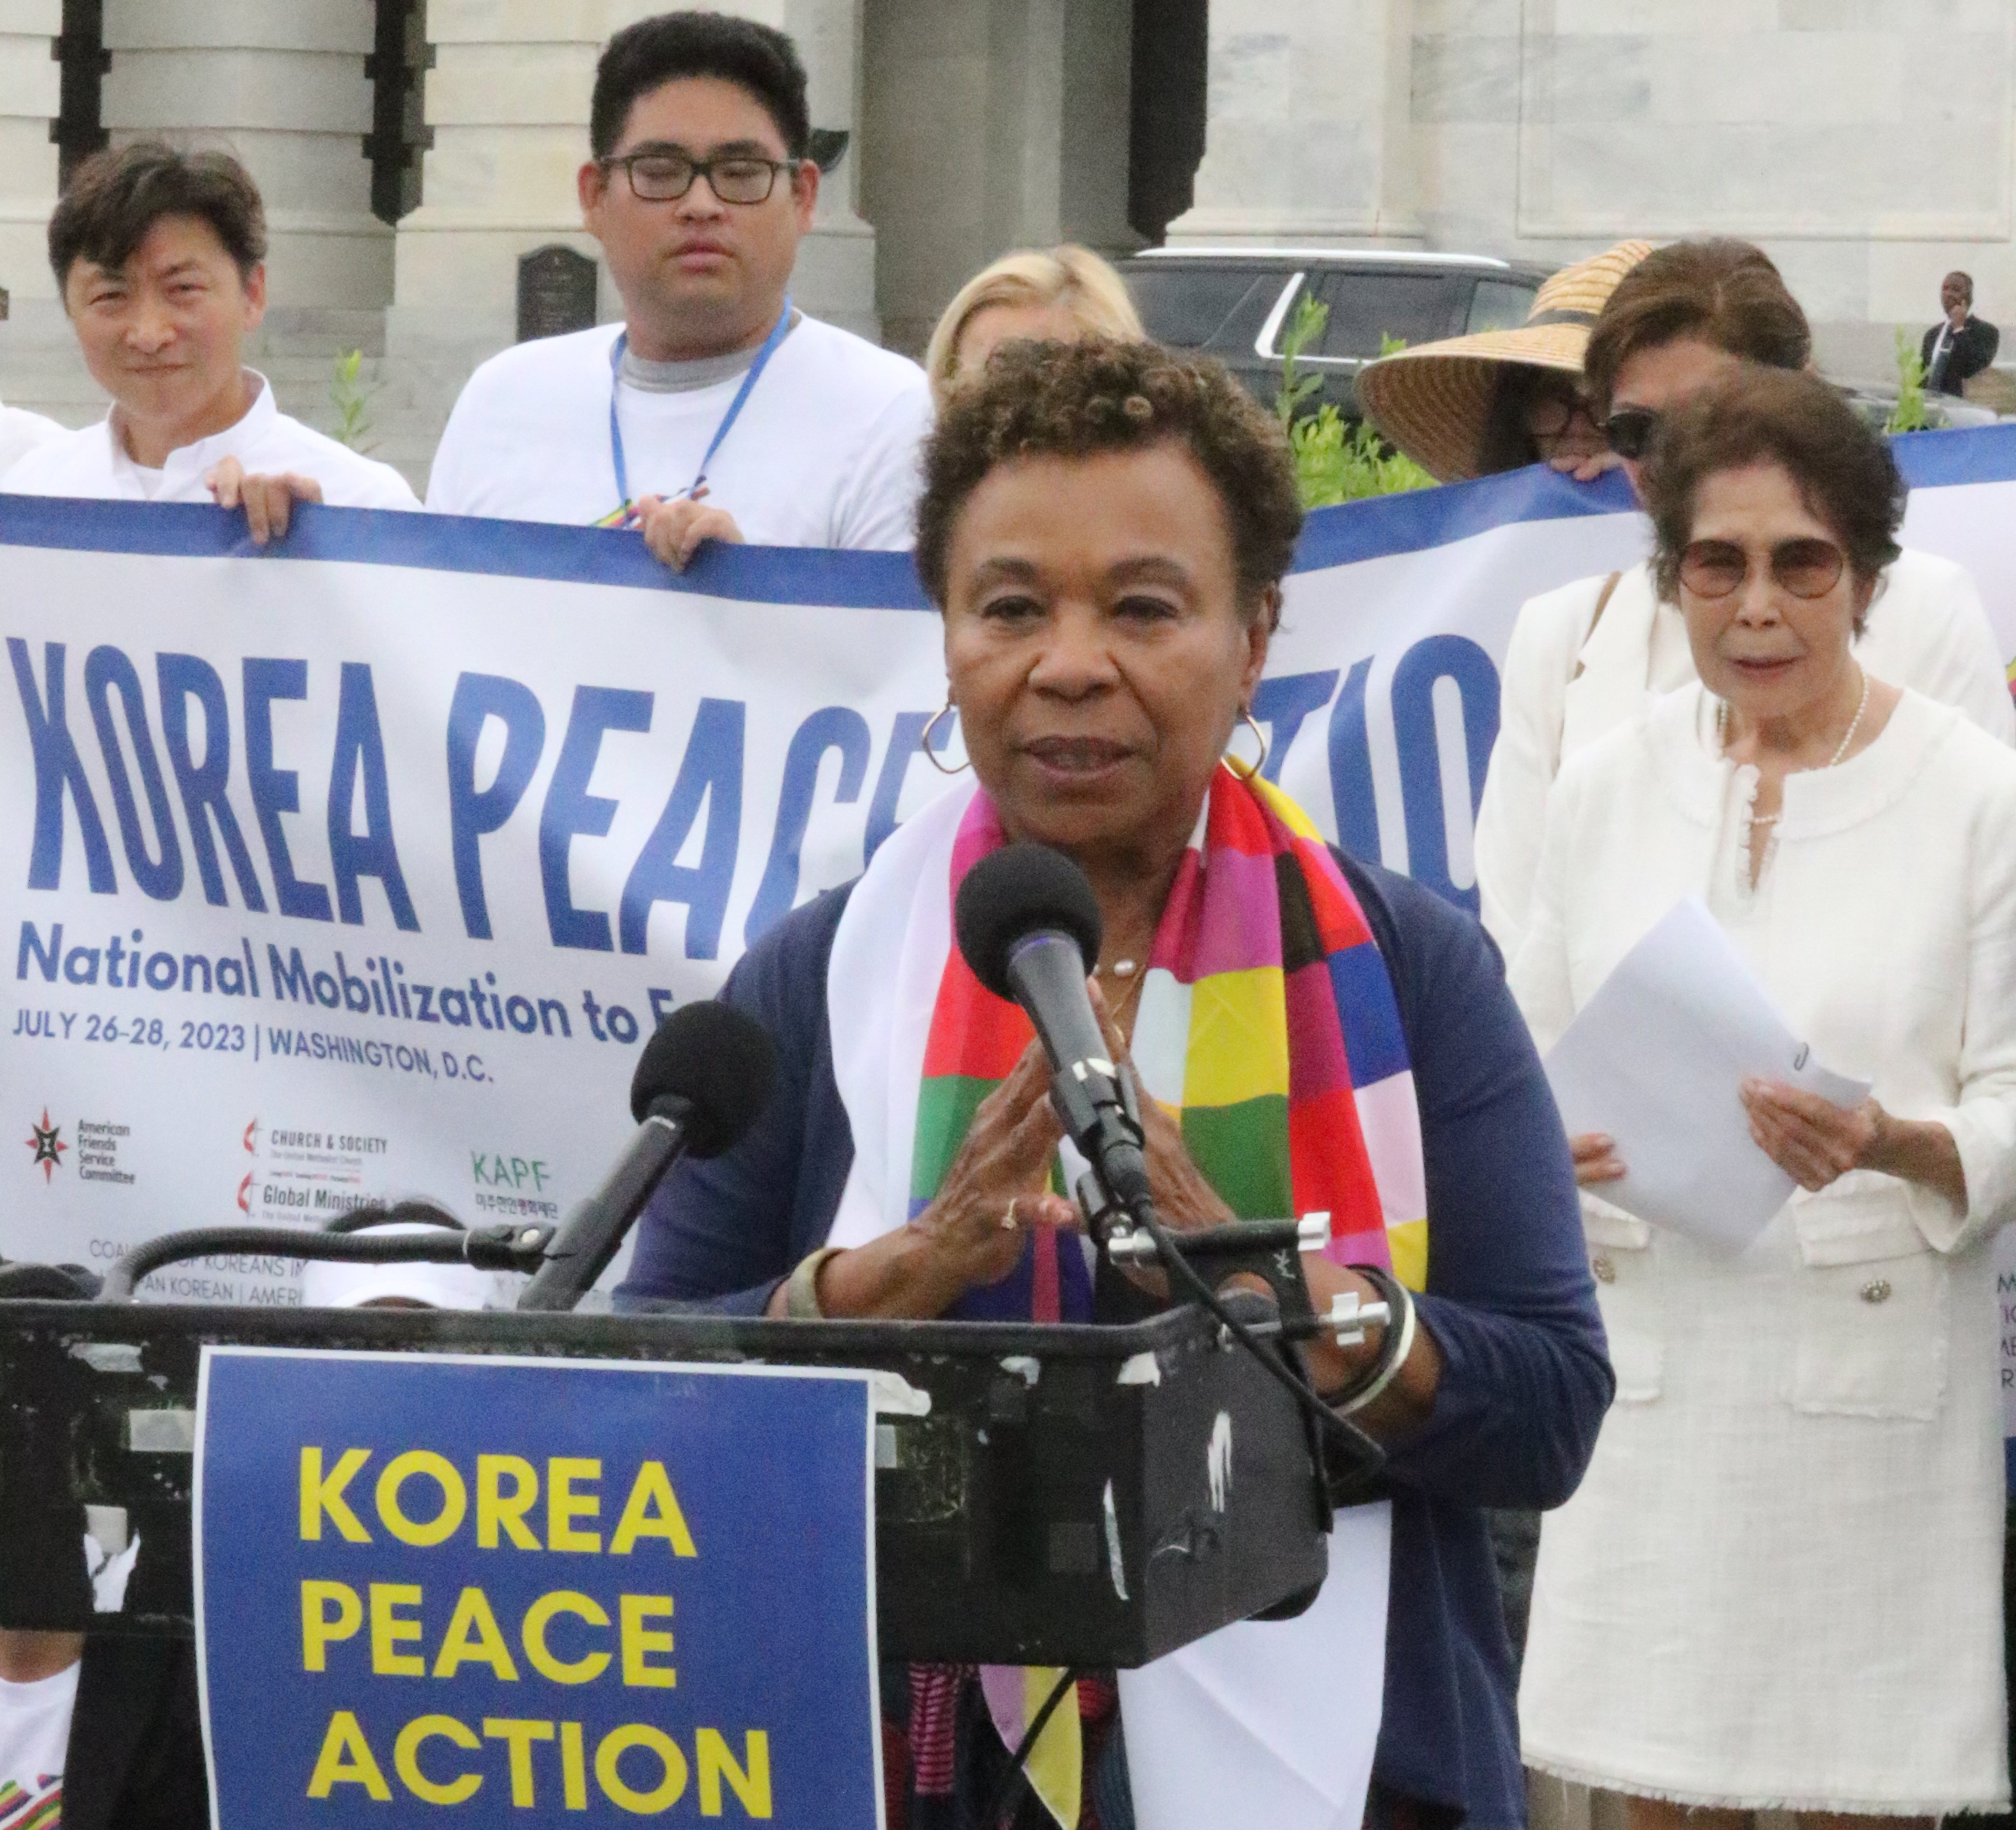 부친이 한국전쟁에 참전한 바바라 리 하원의원이 미 국회의사당 앞에서 33명의 하원의원이 공동 발의한 한반도 평화법안(H.R.1369)을 지지하는 기자회견을 열었다. 이 의원은 전쟁을 종식하고, 한반도에 평화를 위한 투자가 절대적으로 필요하다고 말했다. 이 의원 뒤에 서 있는 한국계 미국인 조이 게바트 여사는 올해 90세로, 그녀의 소원은 북한을 방문해 가족을 만나는 것이다. 사진, 김응선 목사, 연합감리교뉴스.